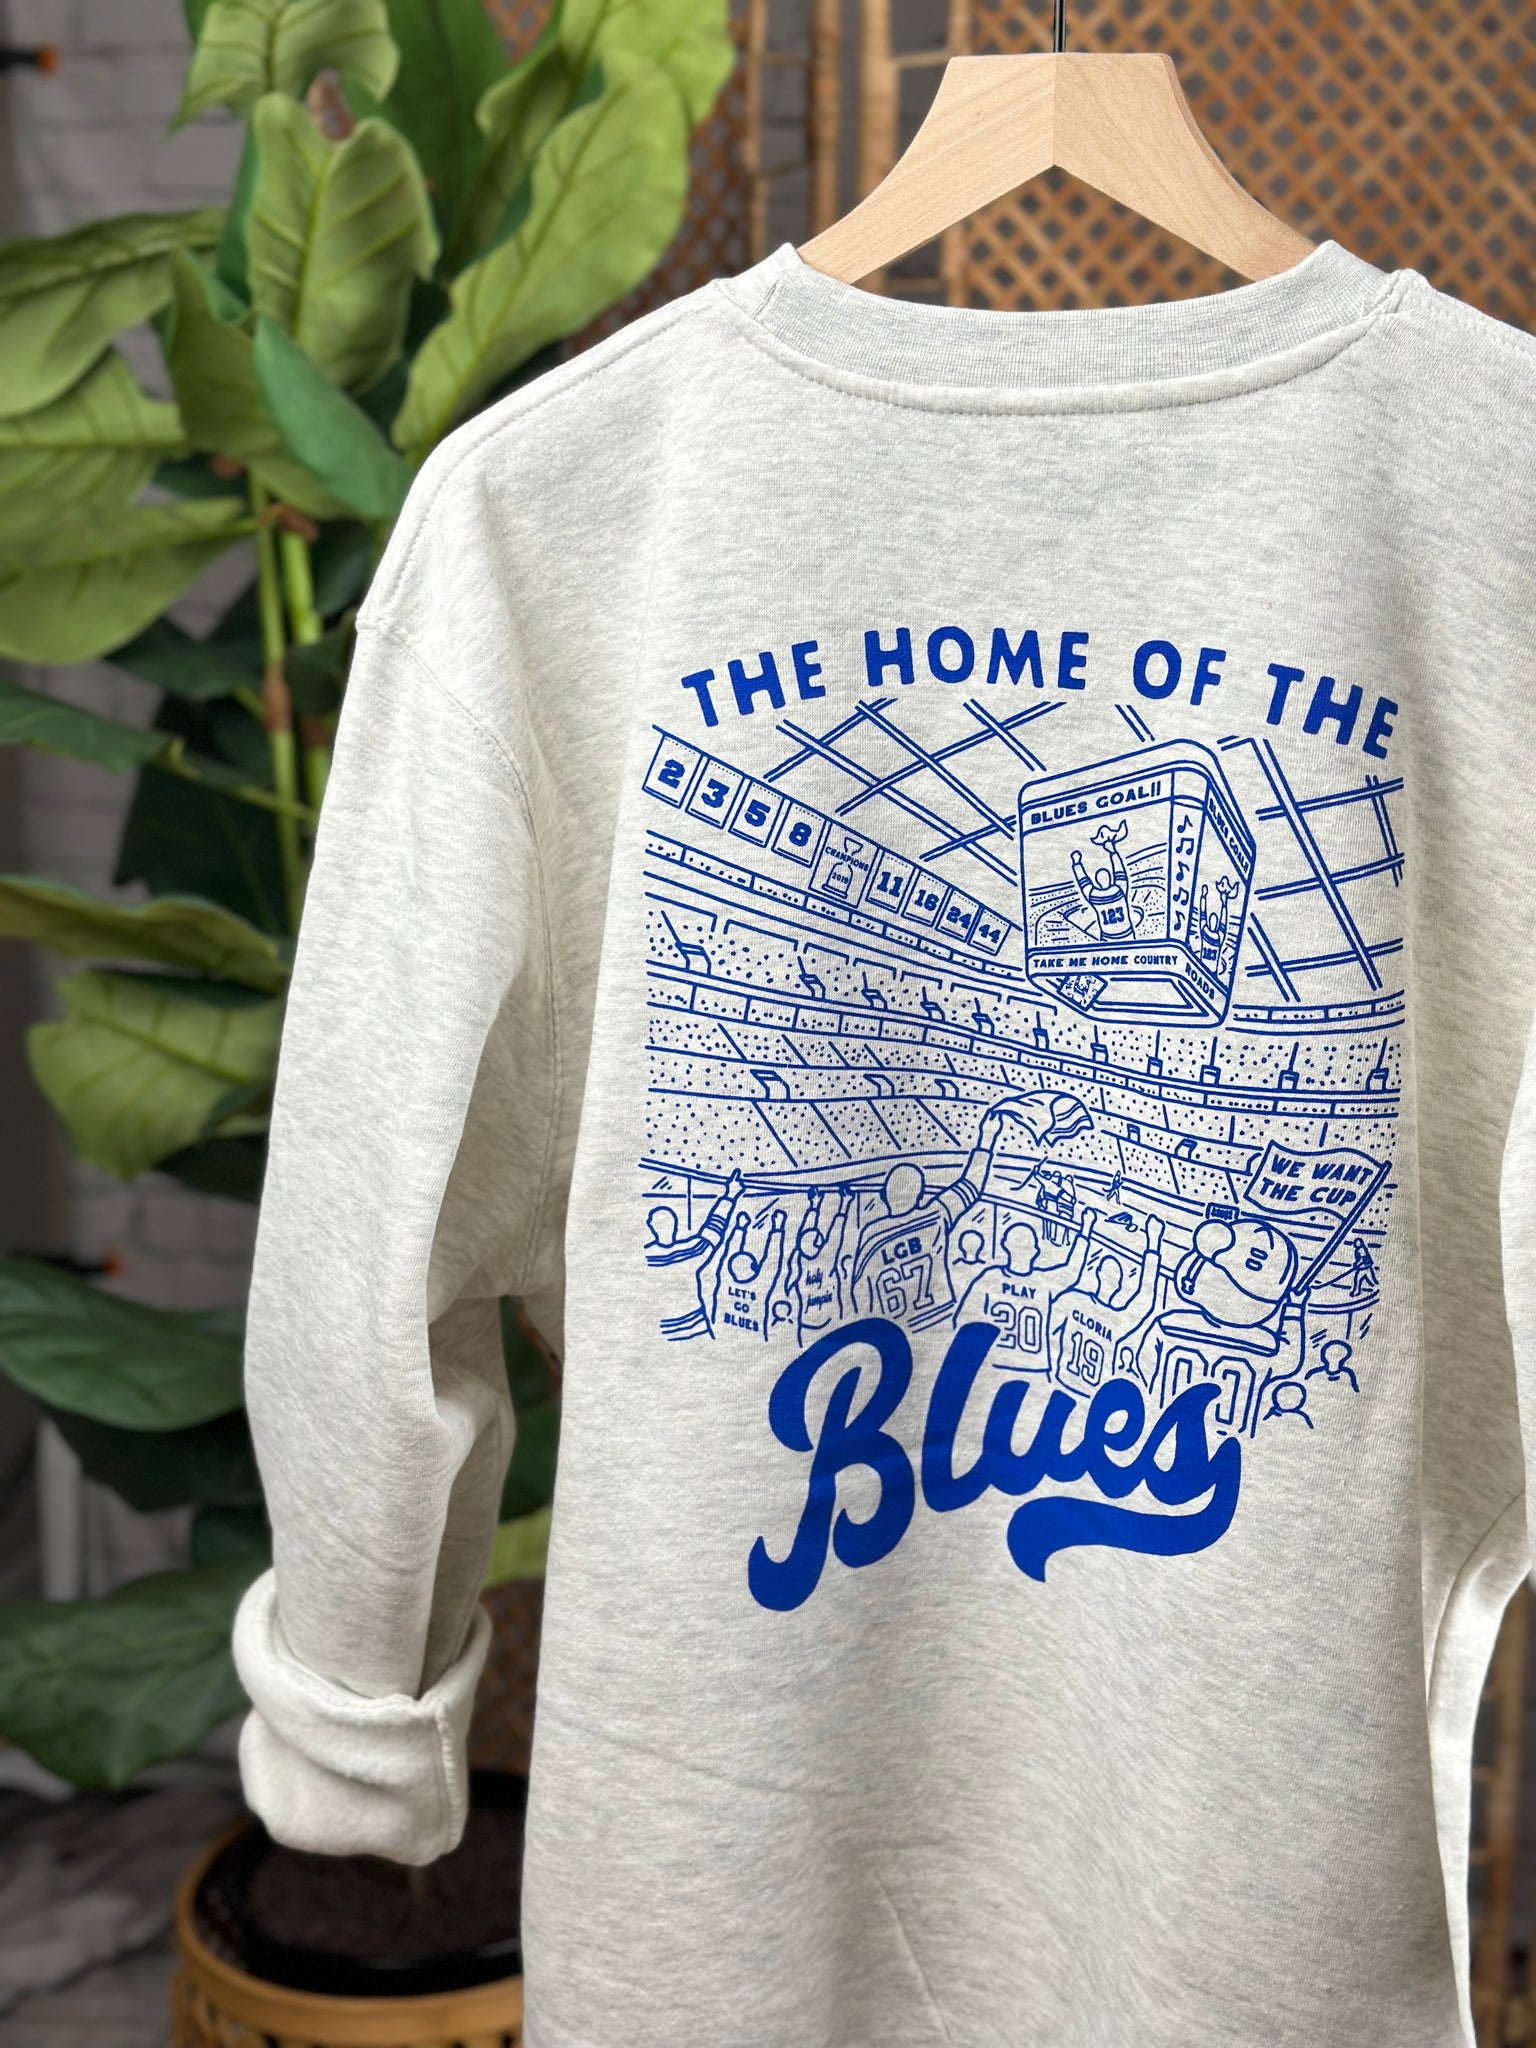 Women's St. Louis Blues Sweatshirt